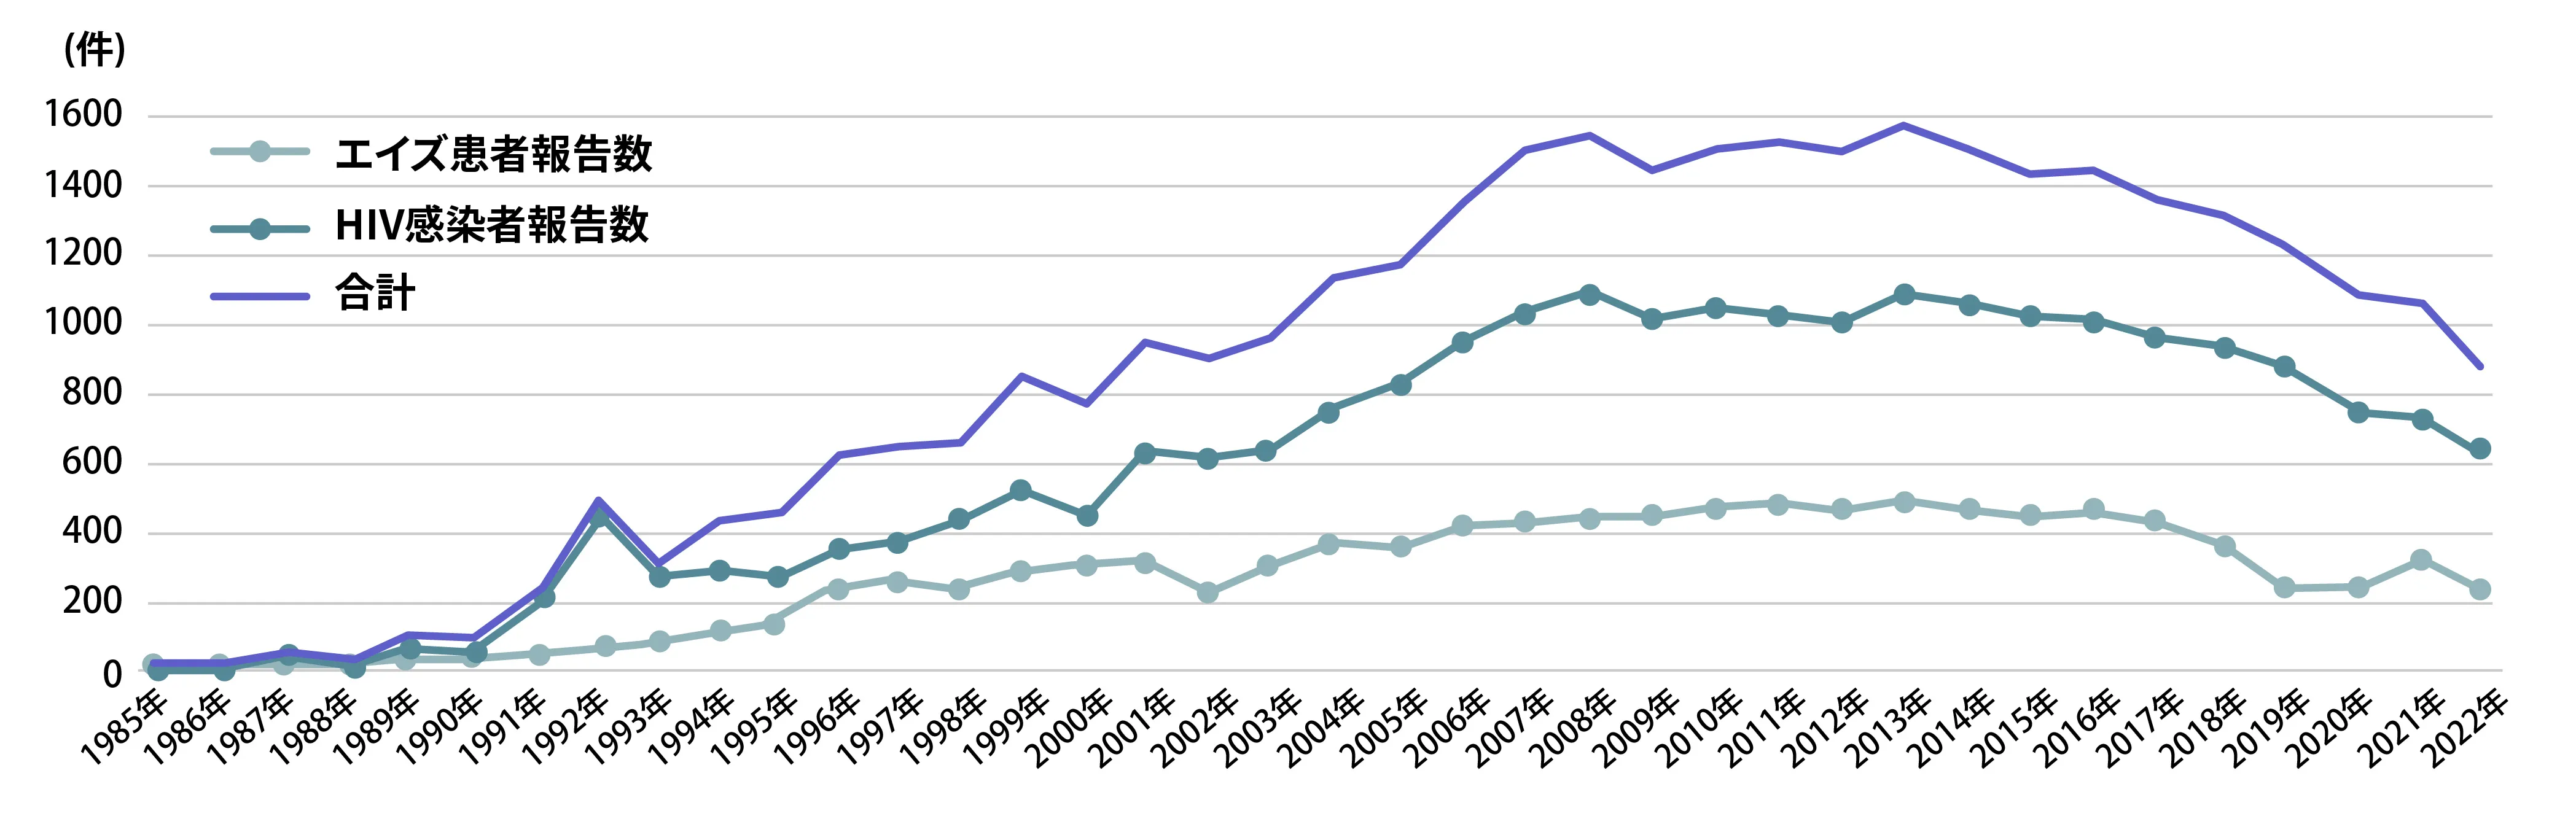 近年のHIV感染者・エイズ患者の新規感染者数のグラフ。エイズ患者報告数とHIV感染者報告数の合計は2016年から６年連続で減少している。